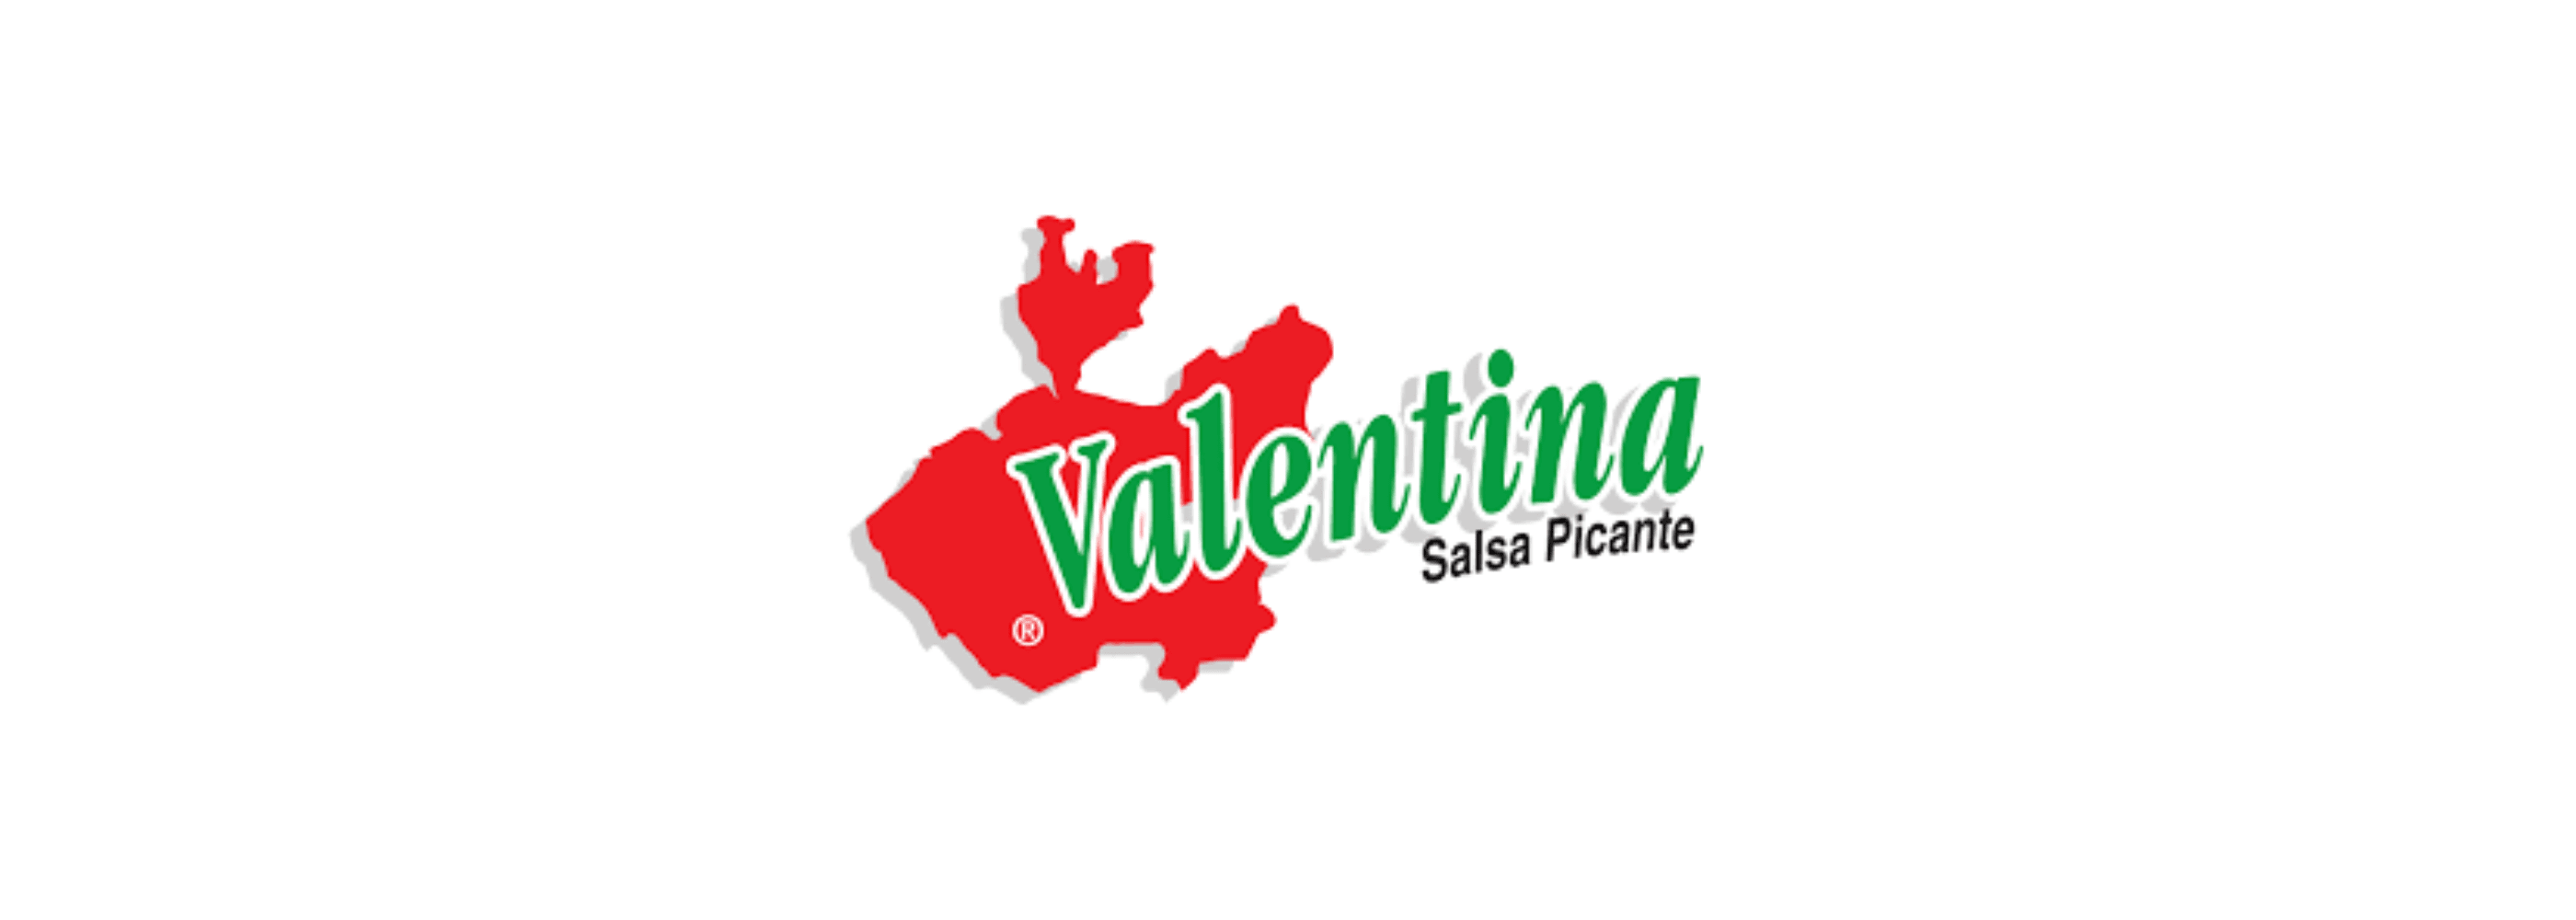 Cafetera Italiana Acero Inoxidable 6 Tazas – Multitienda Las Valentina's.CL